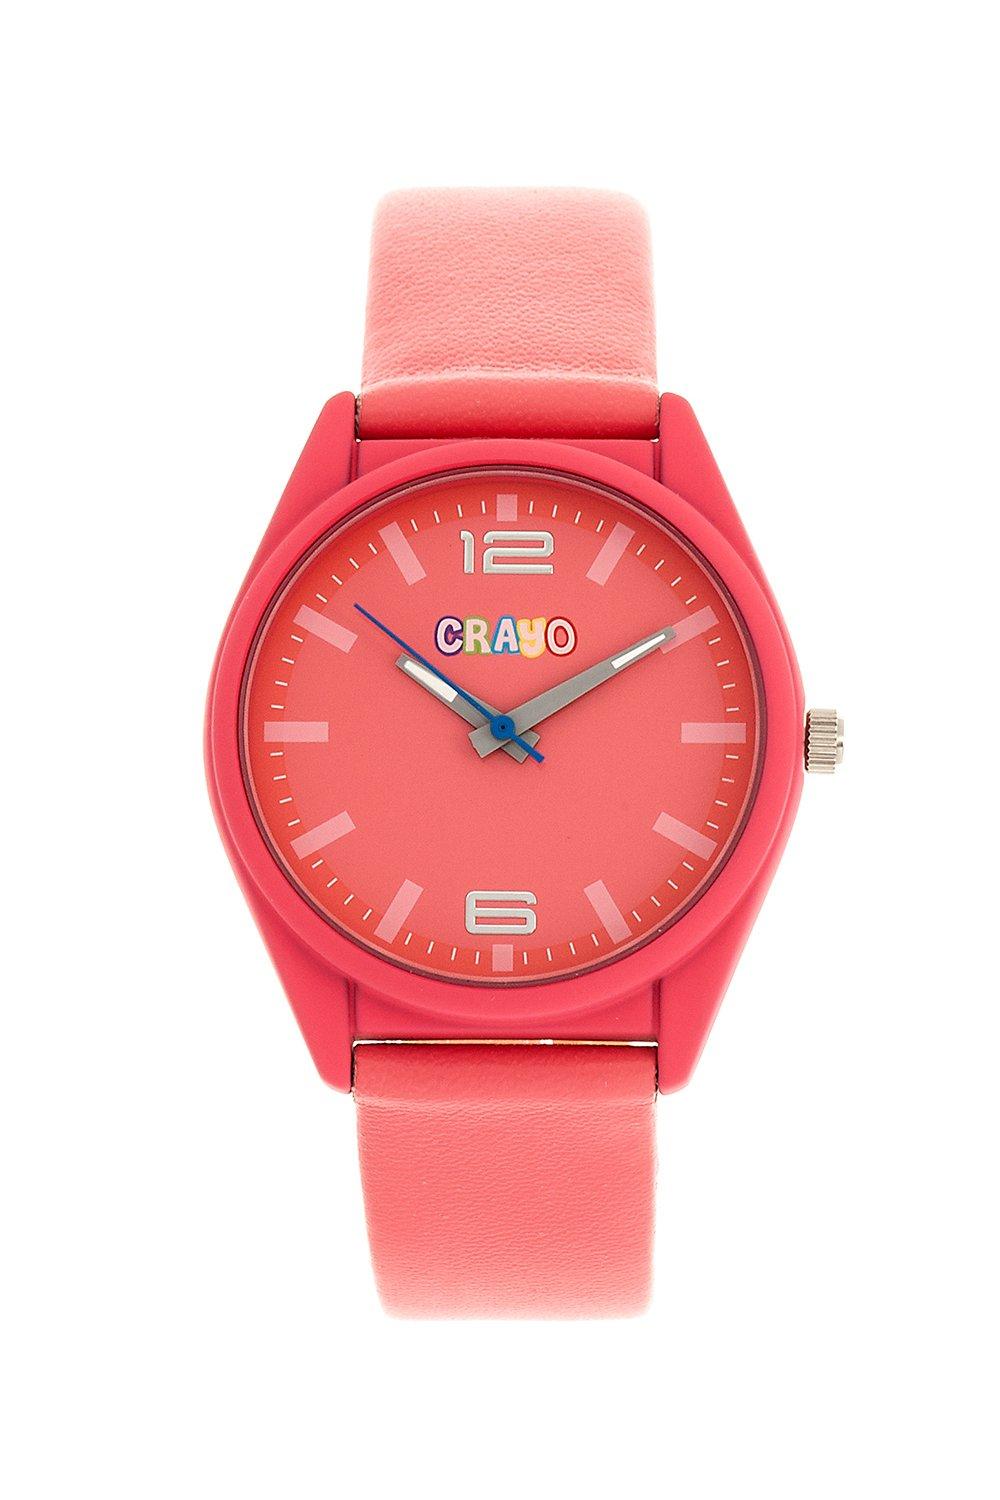 цена Динамические часы унисекс Crayo, розовый